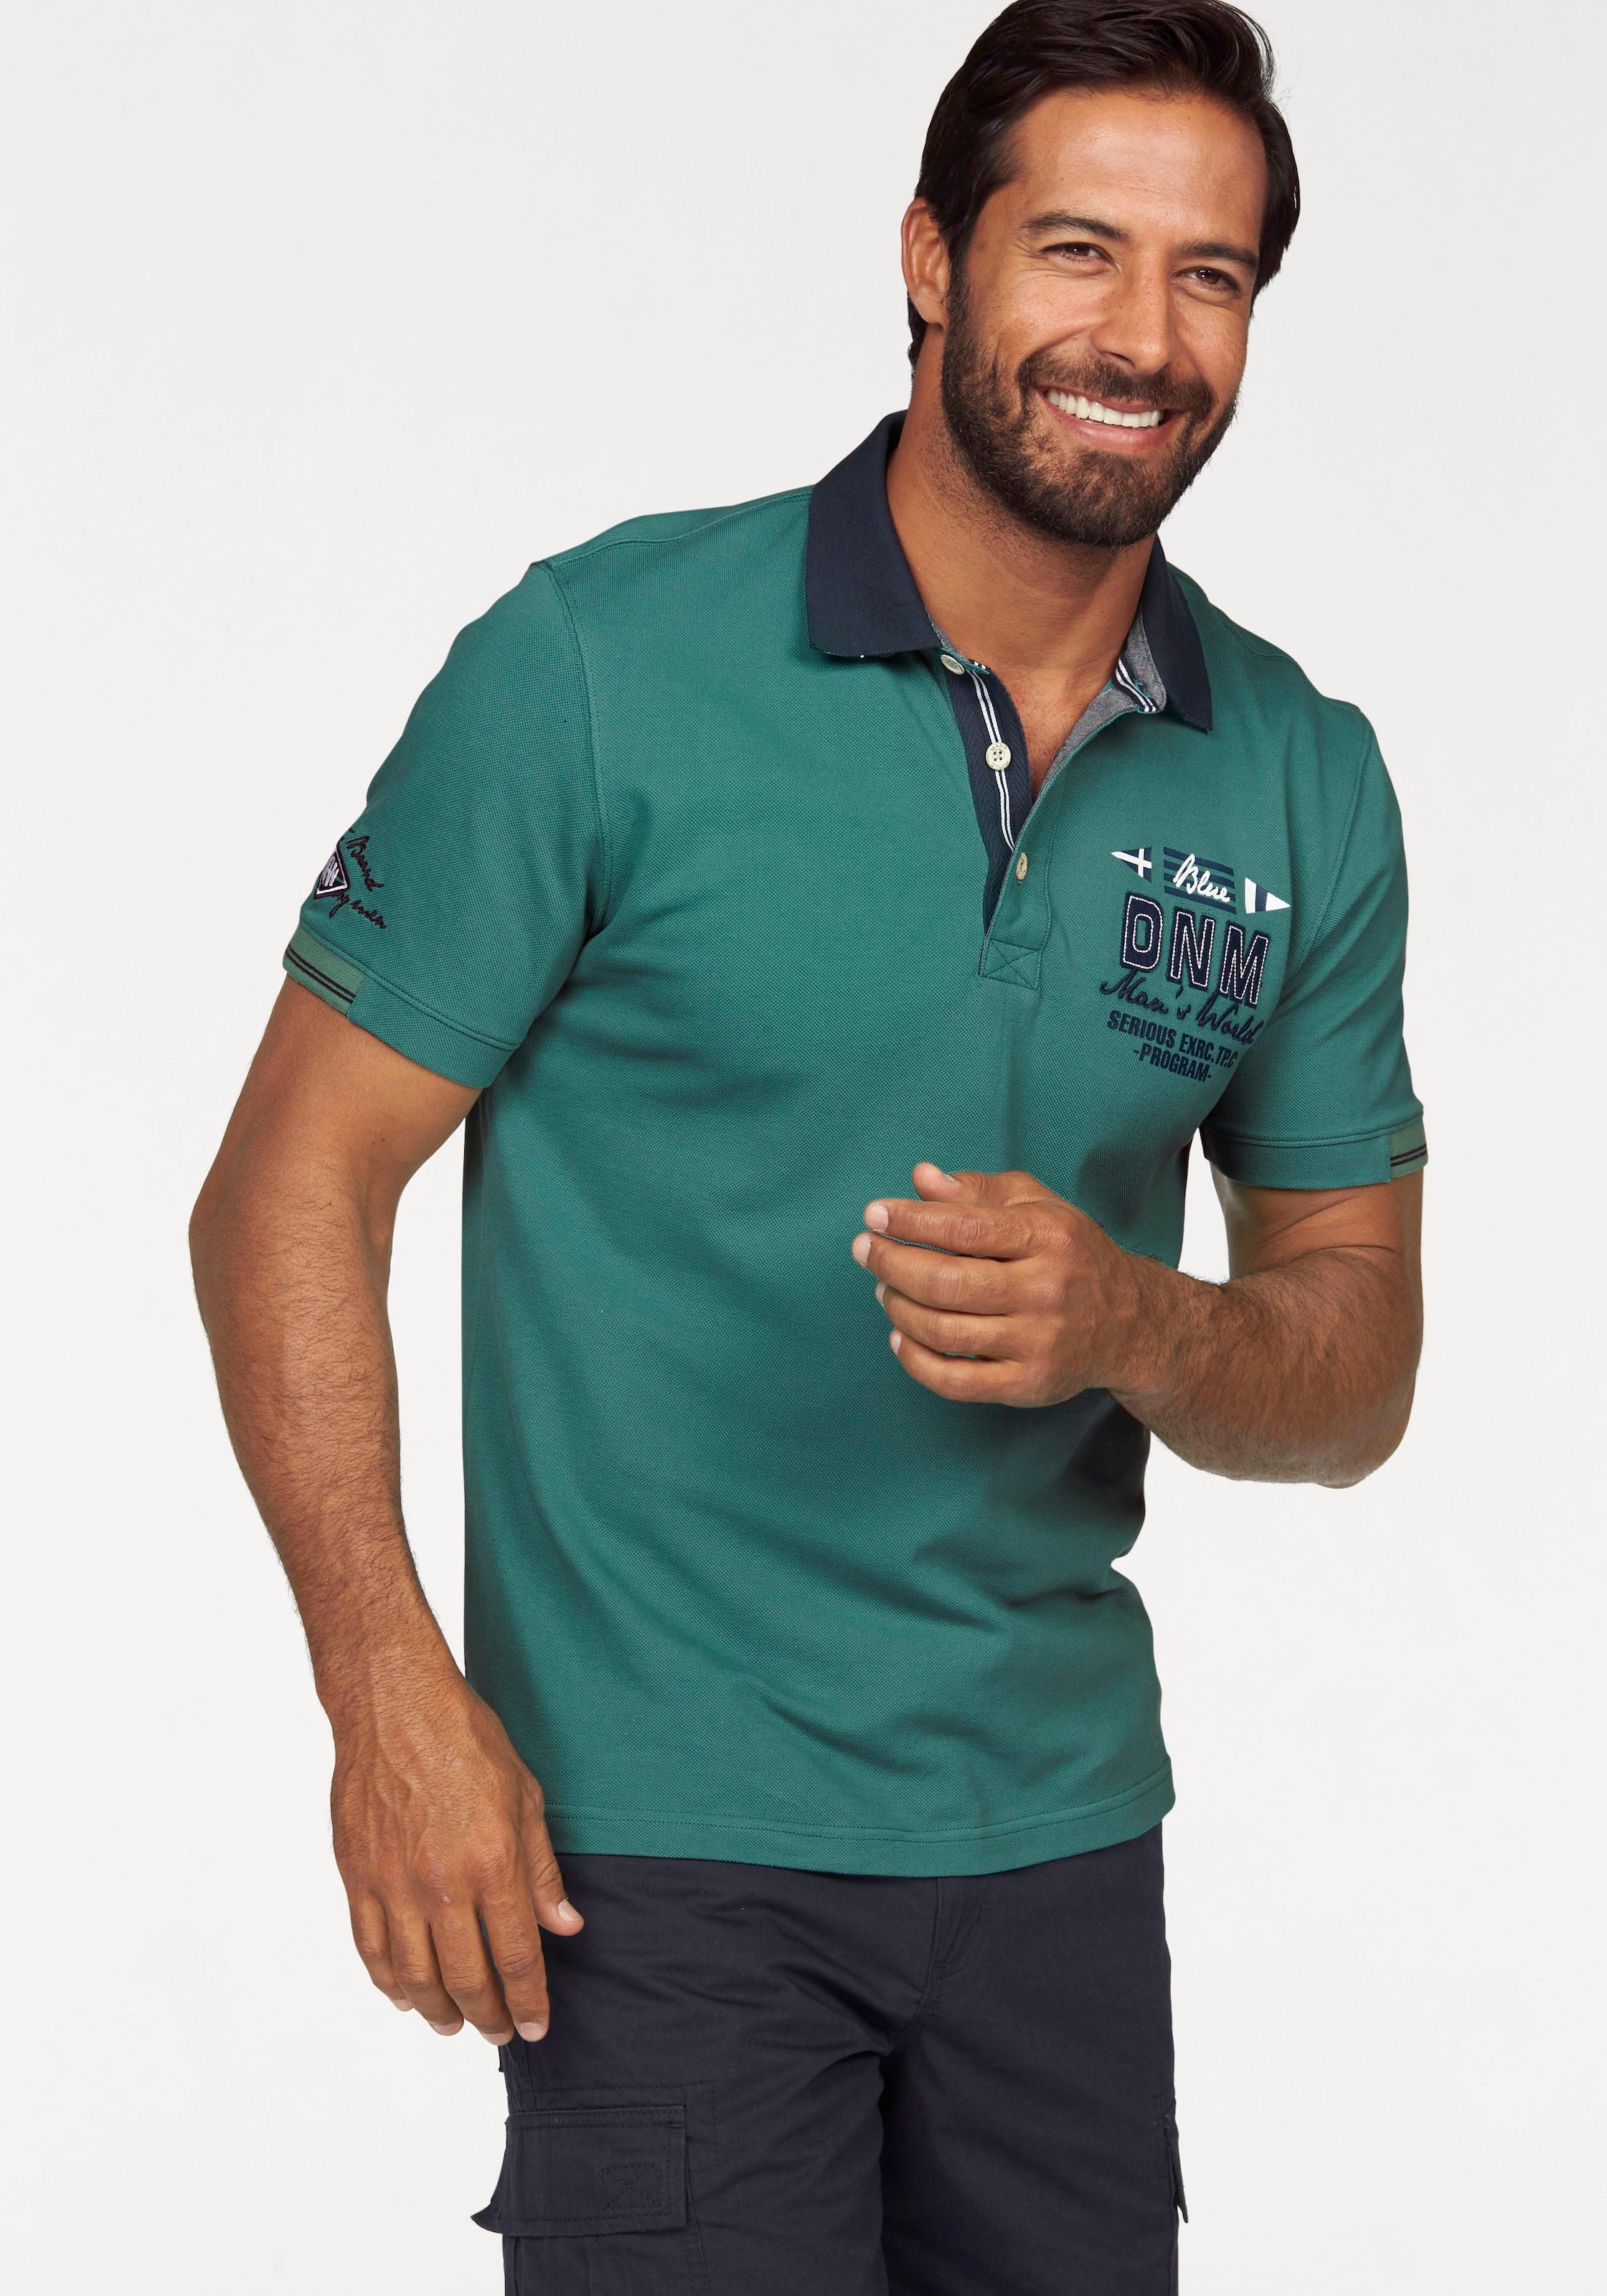 Man's World Poloshirt, in Piqué-Qualität mit Kontrastkragen online  bestellen bei OTTO